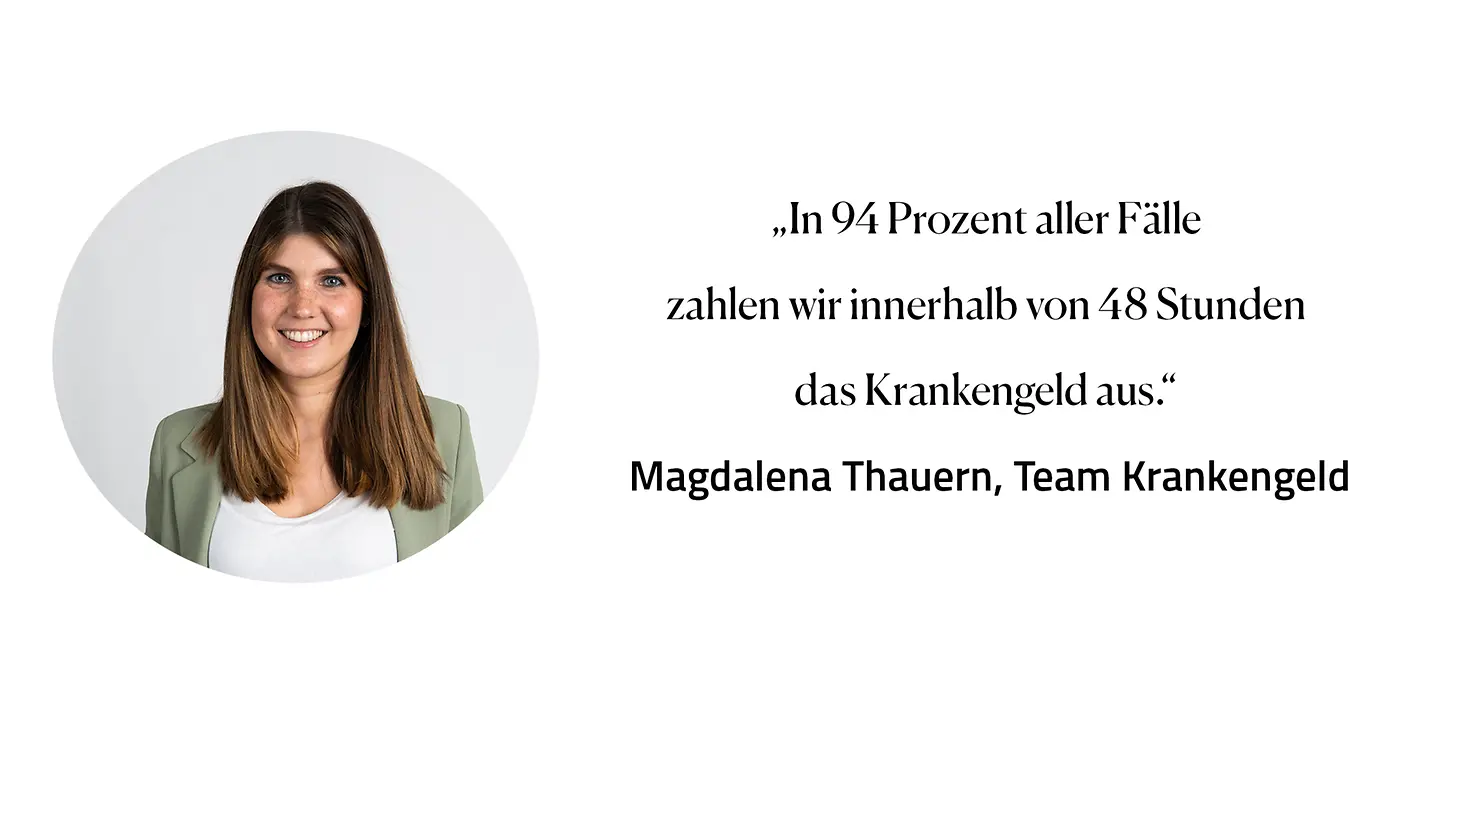 Zitat Magdalena Thauern, Team Krankengeld: "in 94 Prozent aller Fälle zahlen wir innerhalb von 48 Stunden das Krankengeld aus."